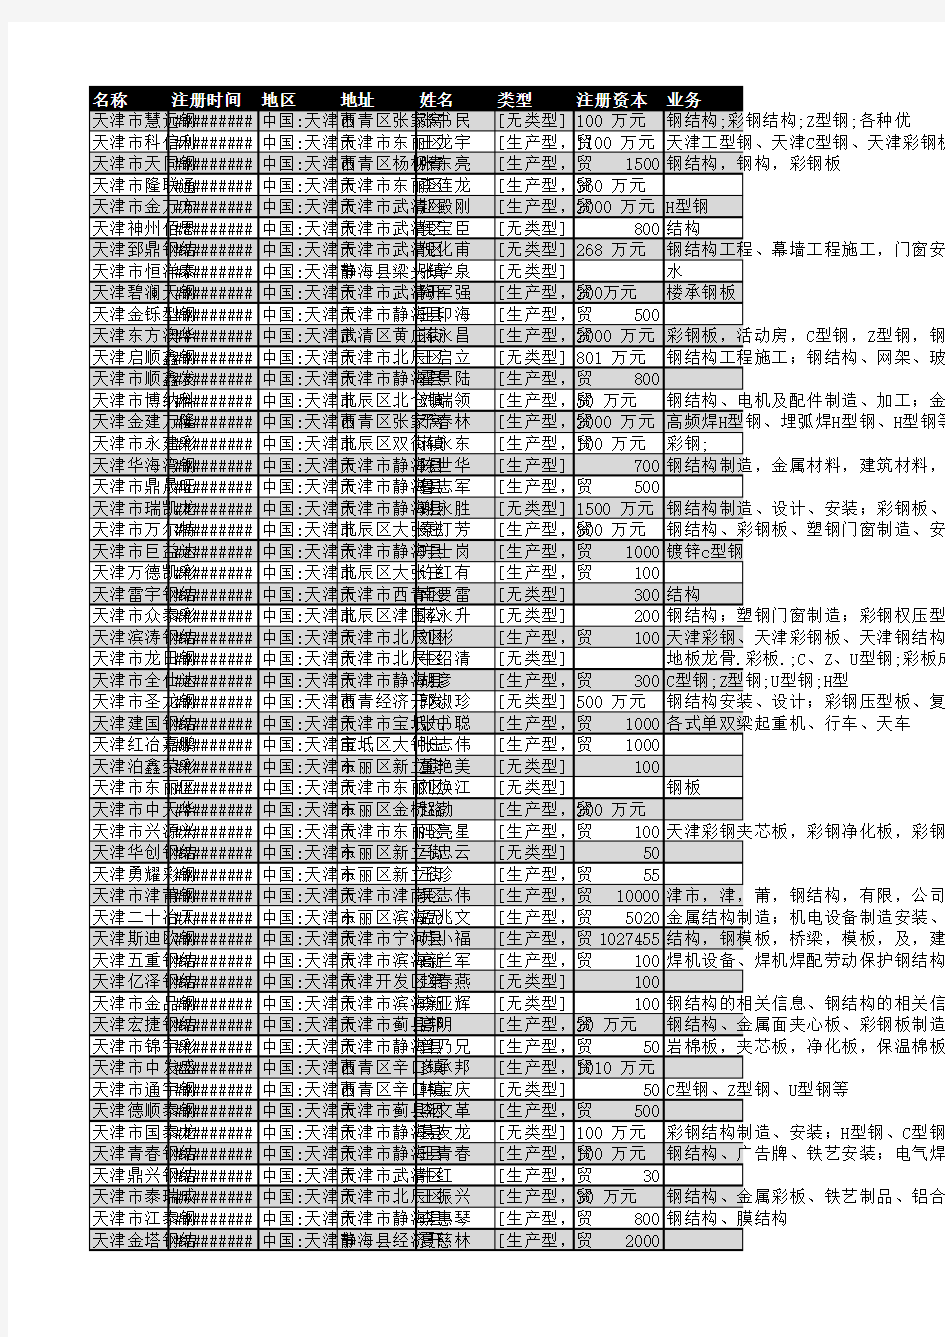 2018年天津市钢结构行业企业名录1046家